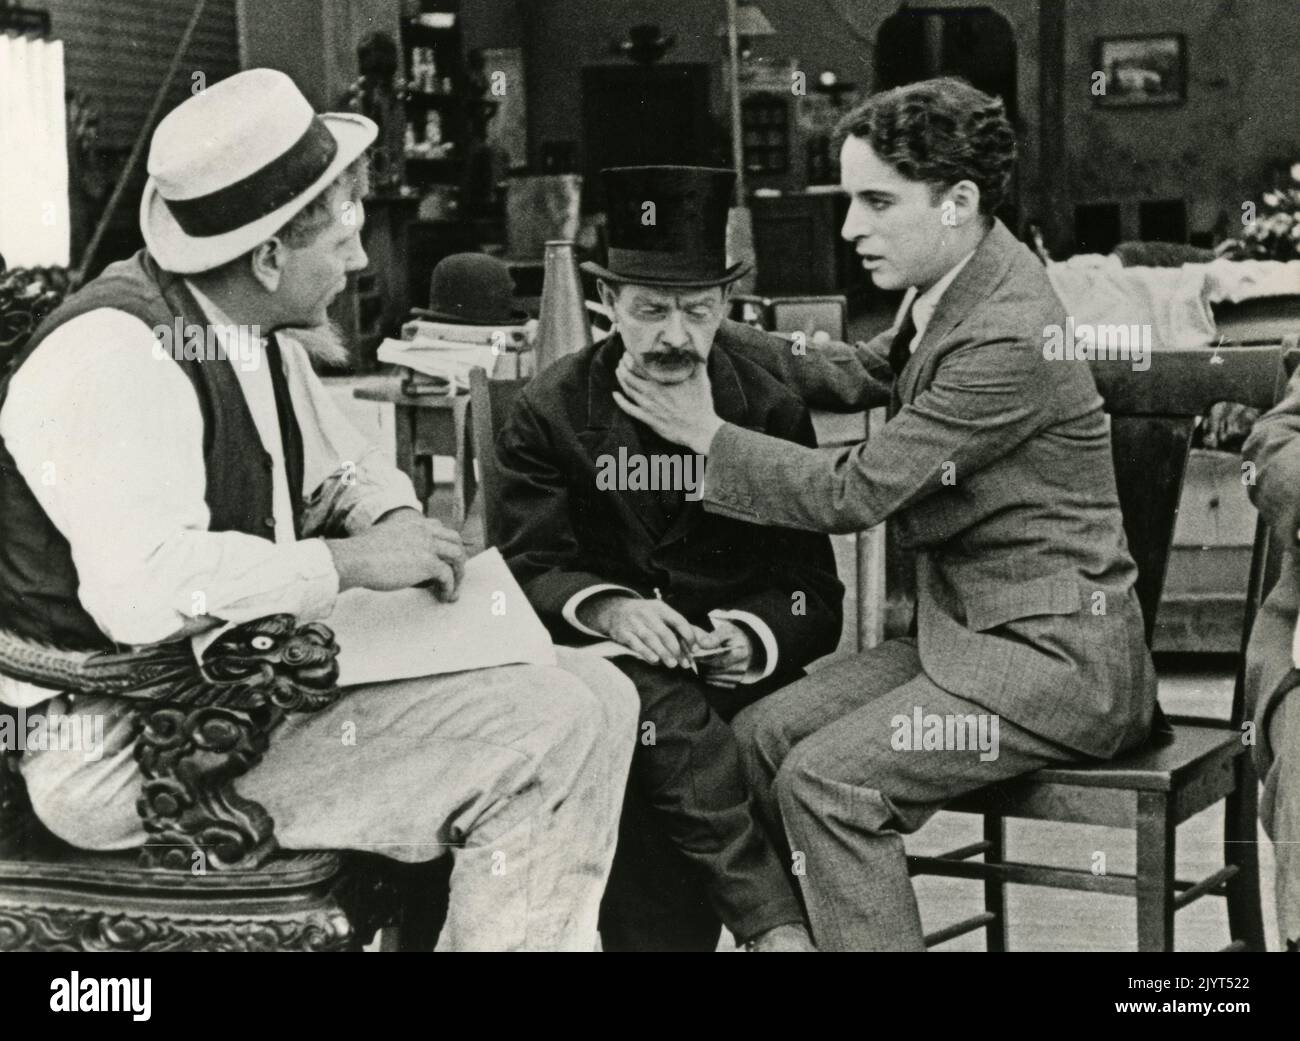 Acteurs Tom Wilson, Loyal Underwood et Charlie Chaplin dans le film The Professor, USA 1919 Banque D'Images